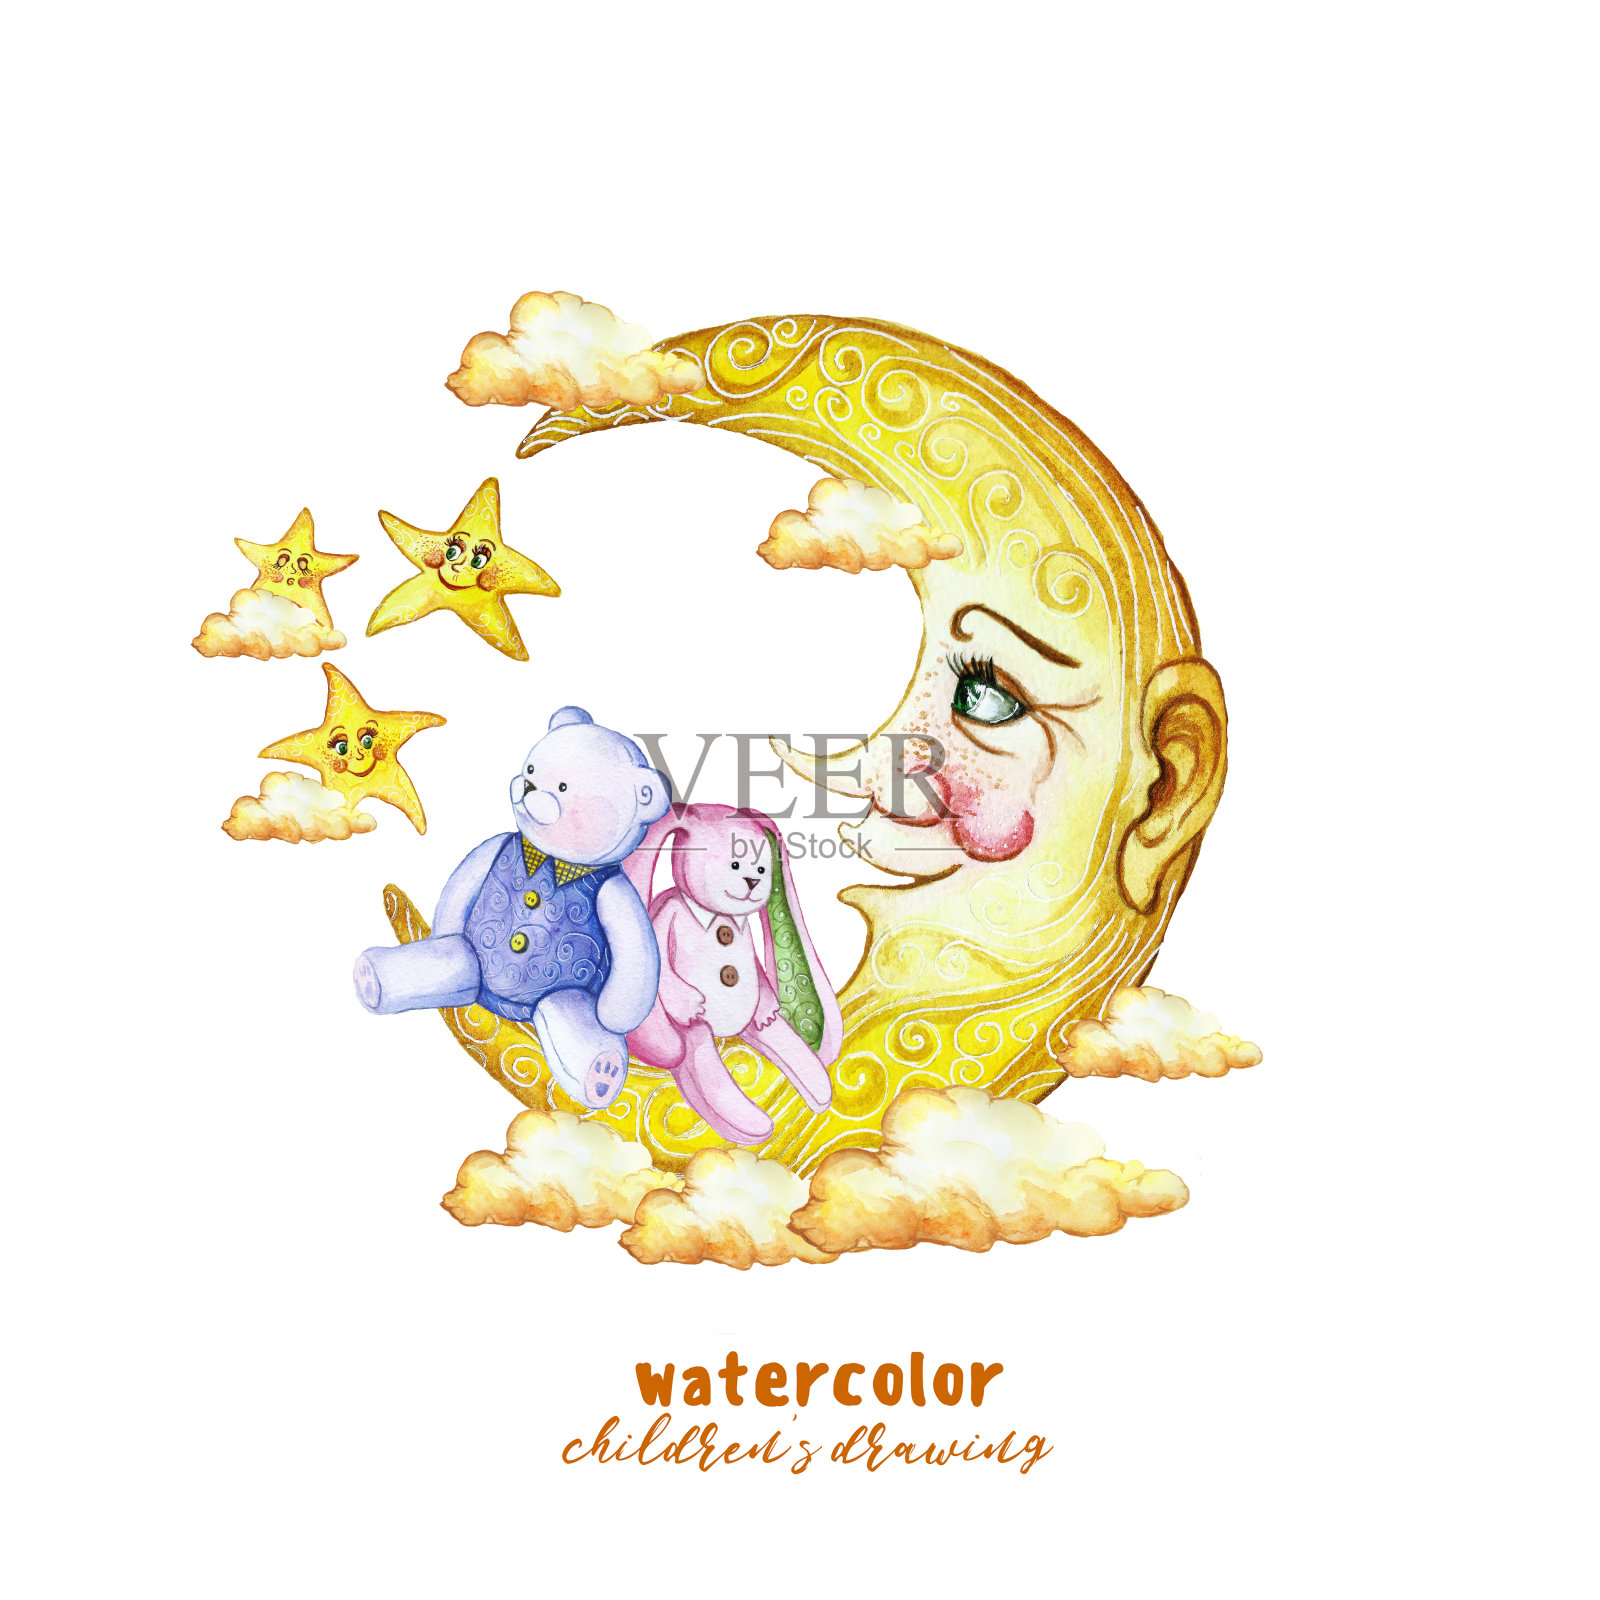 水彩画版画儿童插画用一个月和一个毛绒玩具熊和兔子，在天空中的星星和橙色的云卡通风格，对夜晚的主题，星座进行装饰和设计插画图片素材